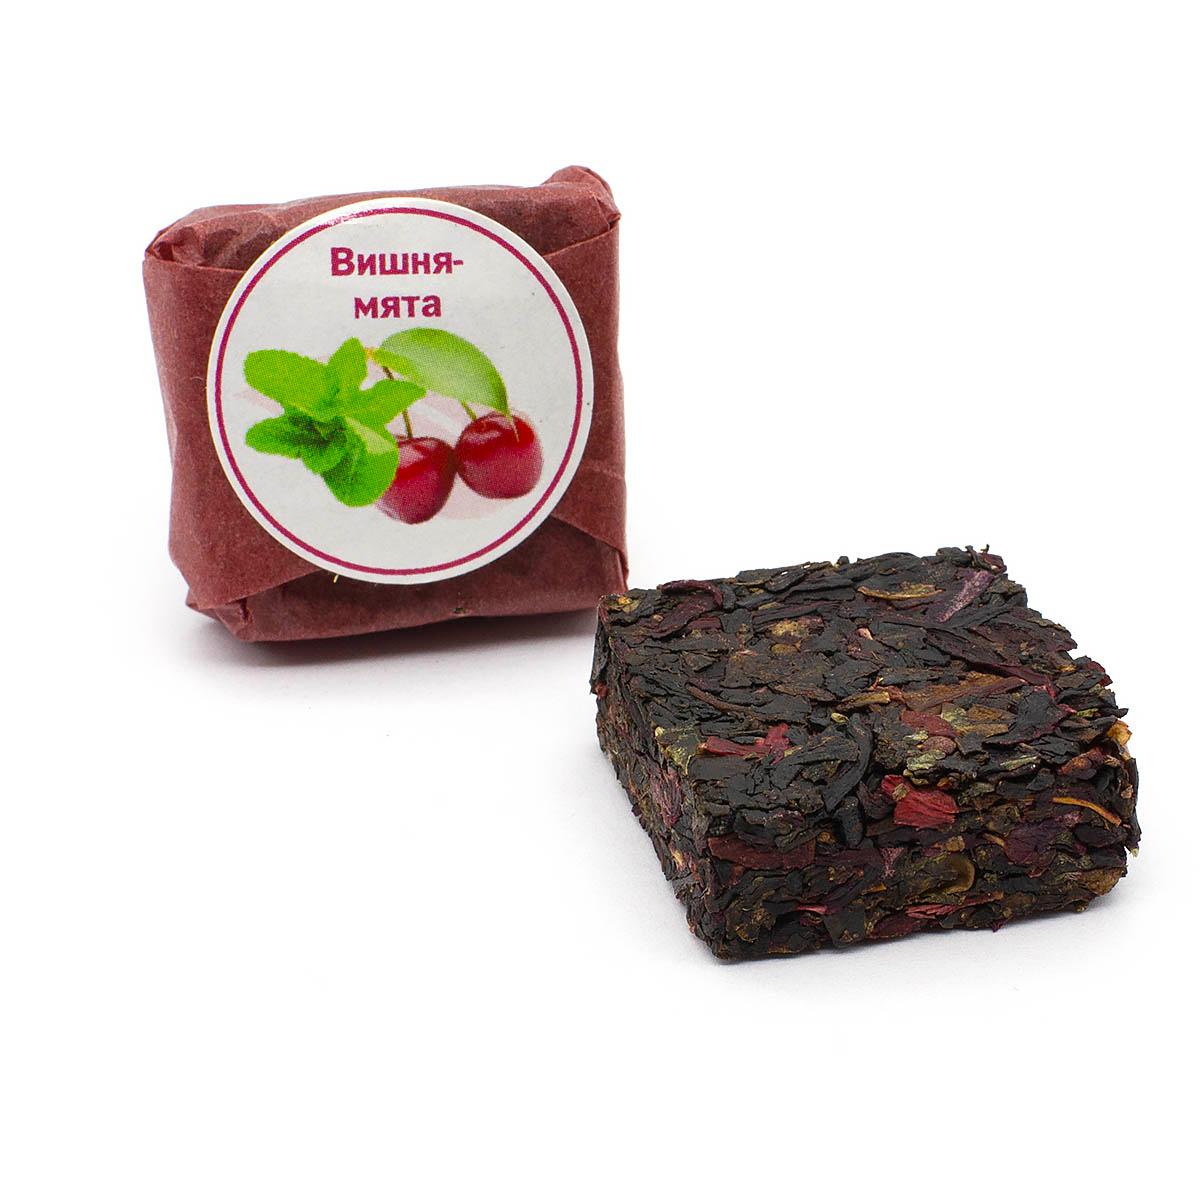 Чай фруктово-ягодный Вишня-мята, кубик 5-7 г (промо)